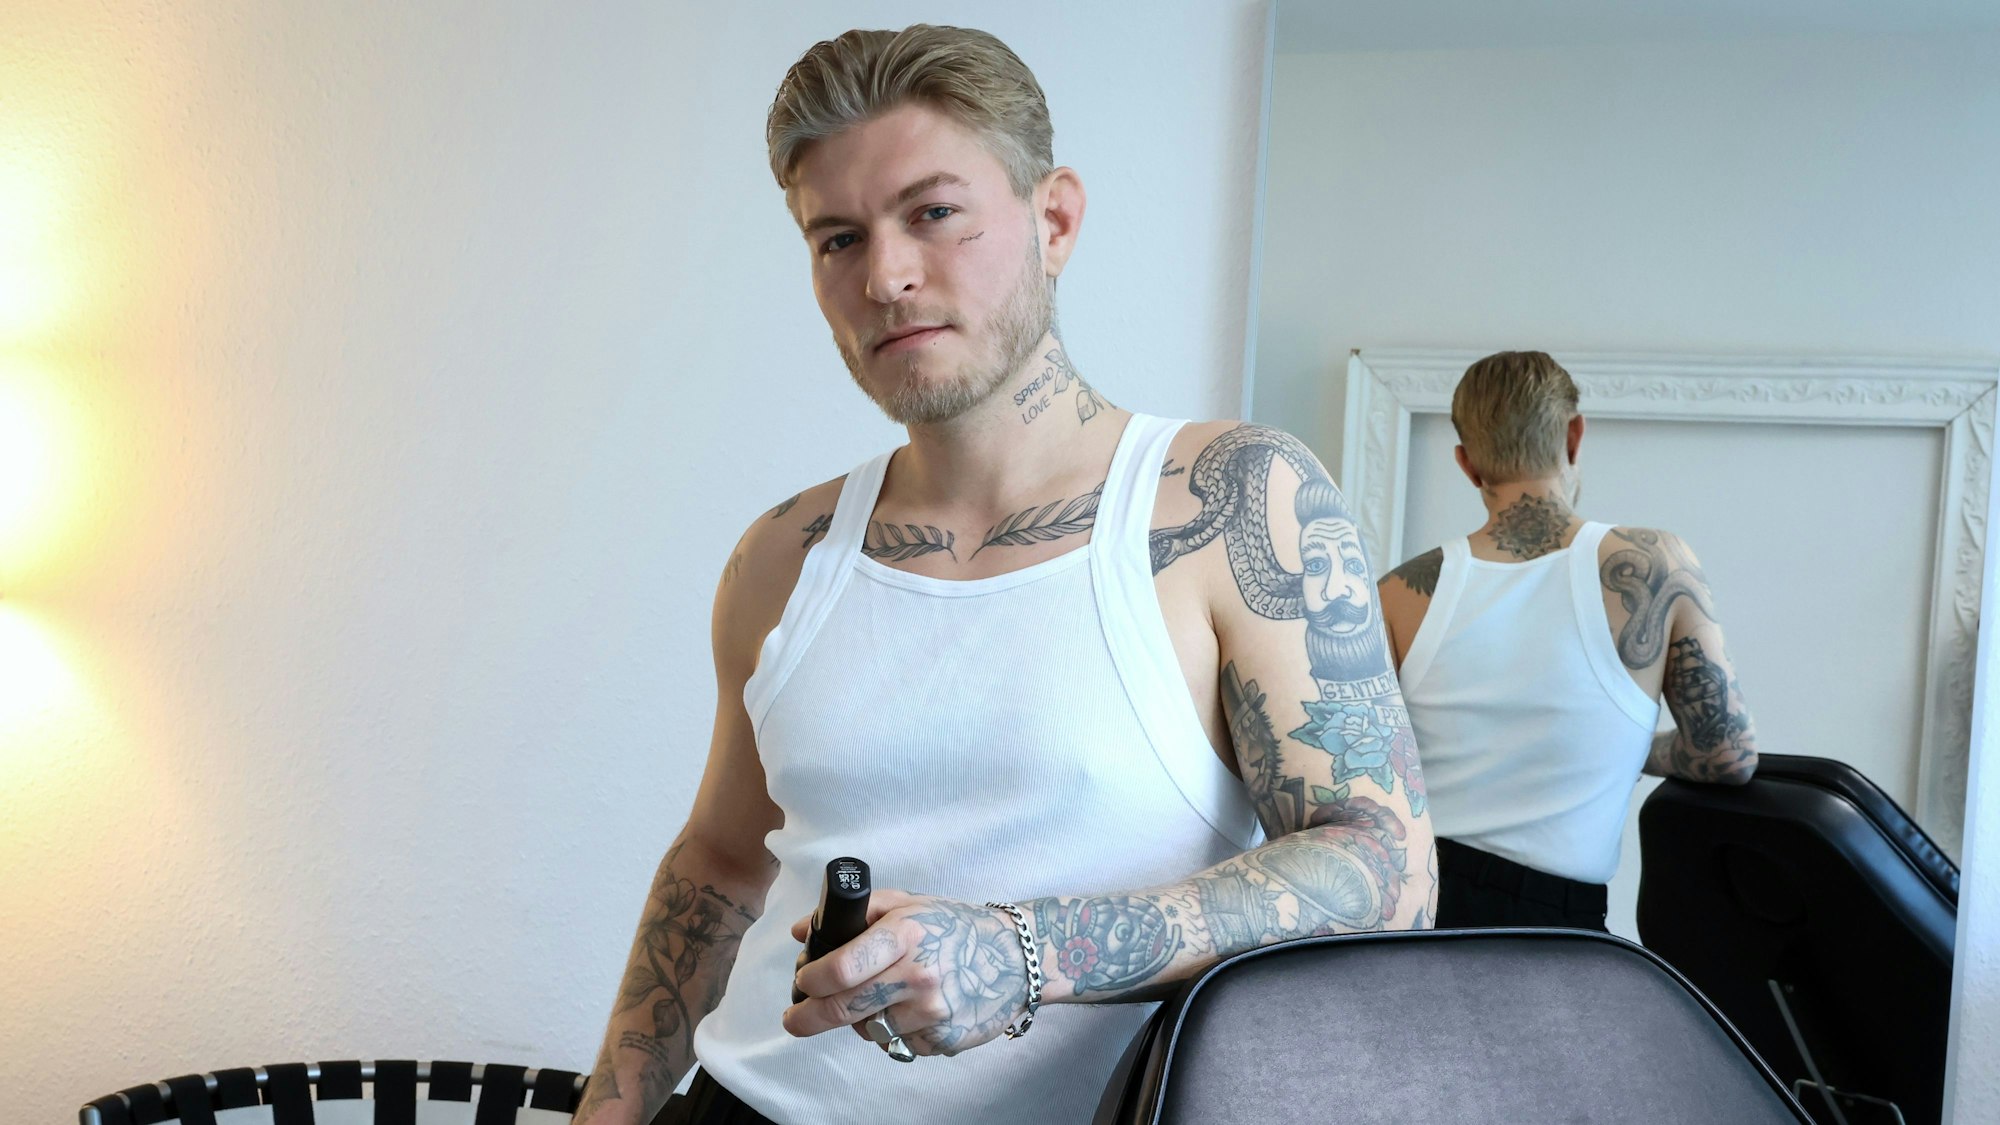 Das Bild zeigt Léon Sebastian Tiesler in einem weißen Unterhemd. Seine zahlreichen Tattoos auf dem Arm, am Brustbein, am Hals und im Gesicht sind gut zu erkennen.



